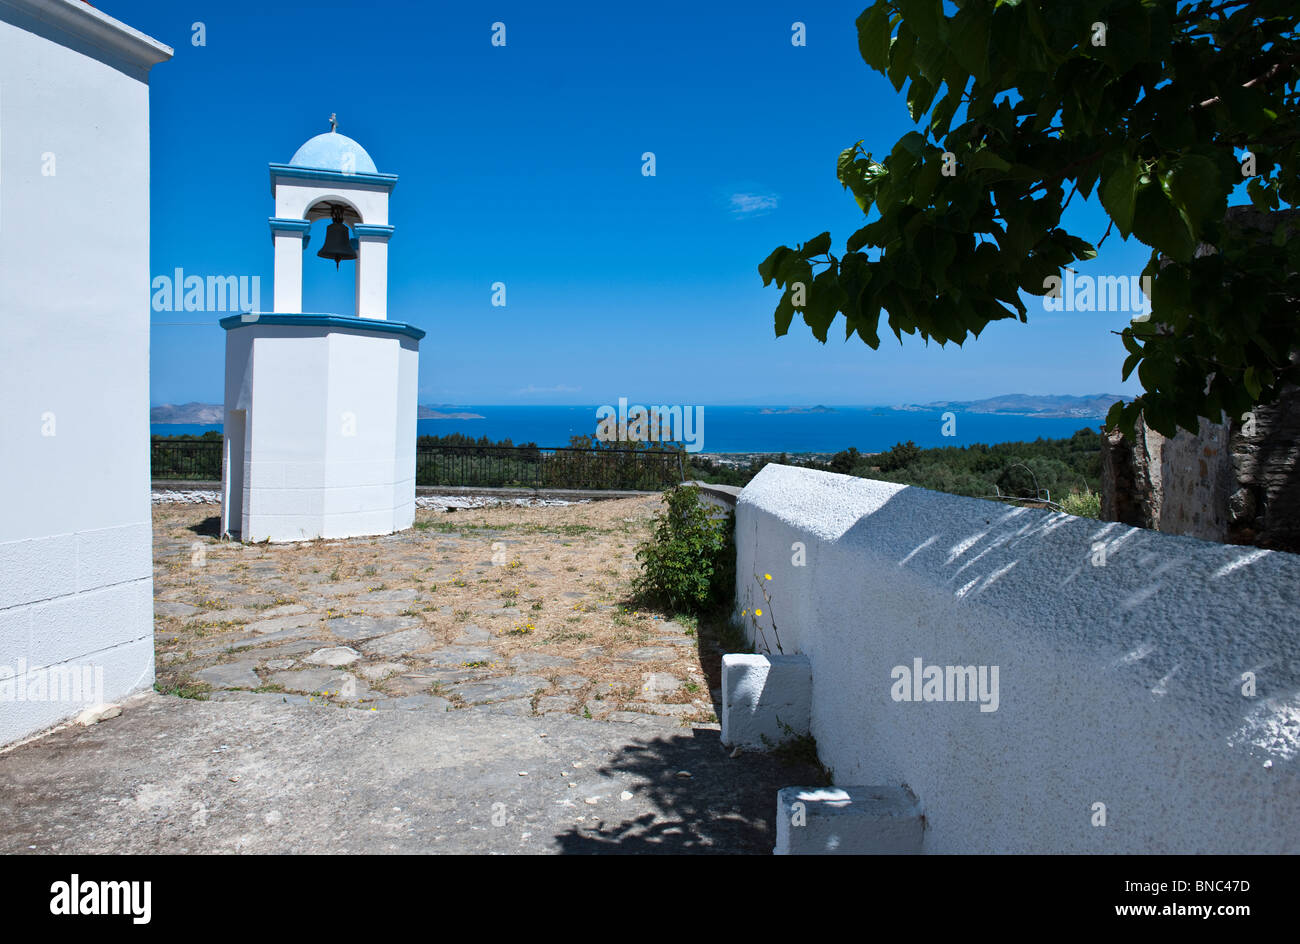 Greece, Dodecanese, Kos, the Agios Dimitrios church in Zia village Stock Photo